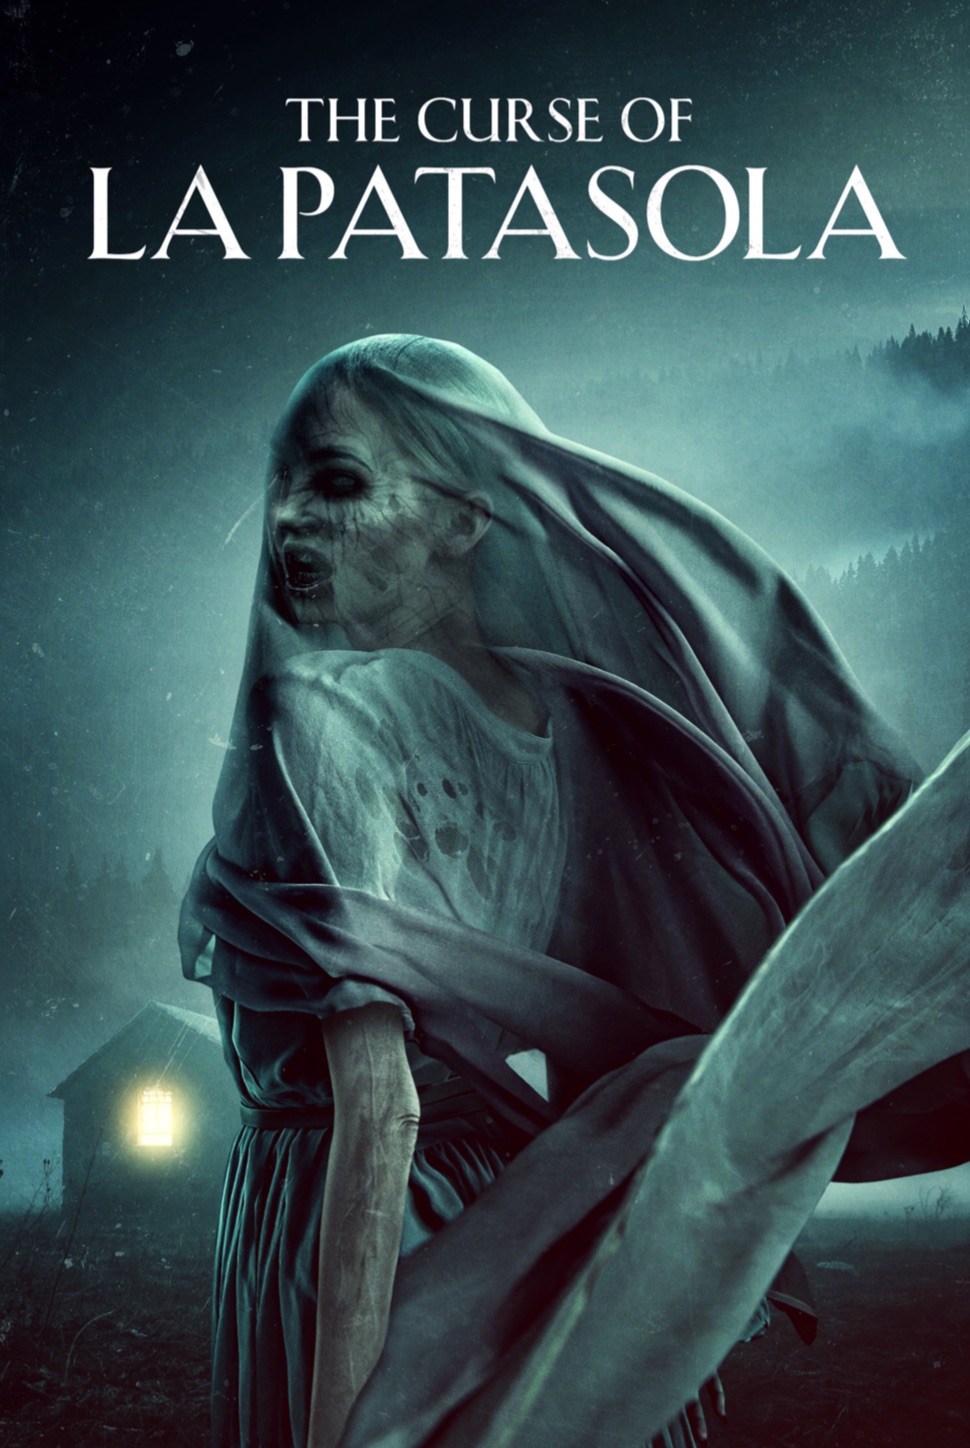 The Curse of La Patasola Trailer & Poster 2